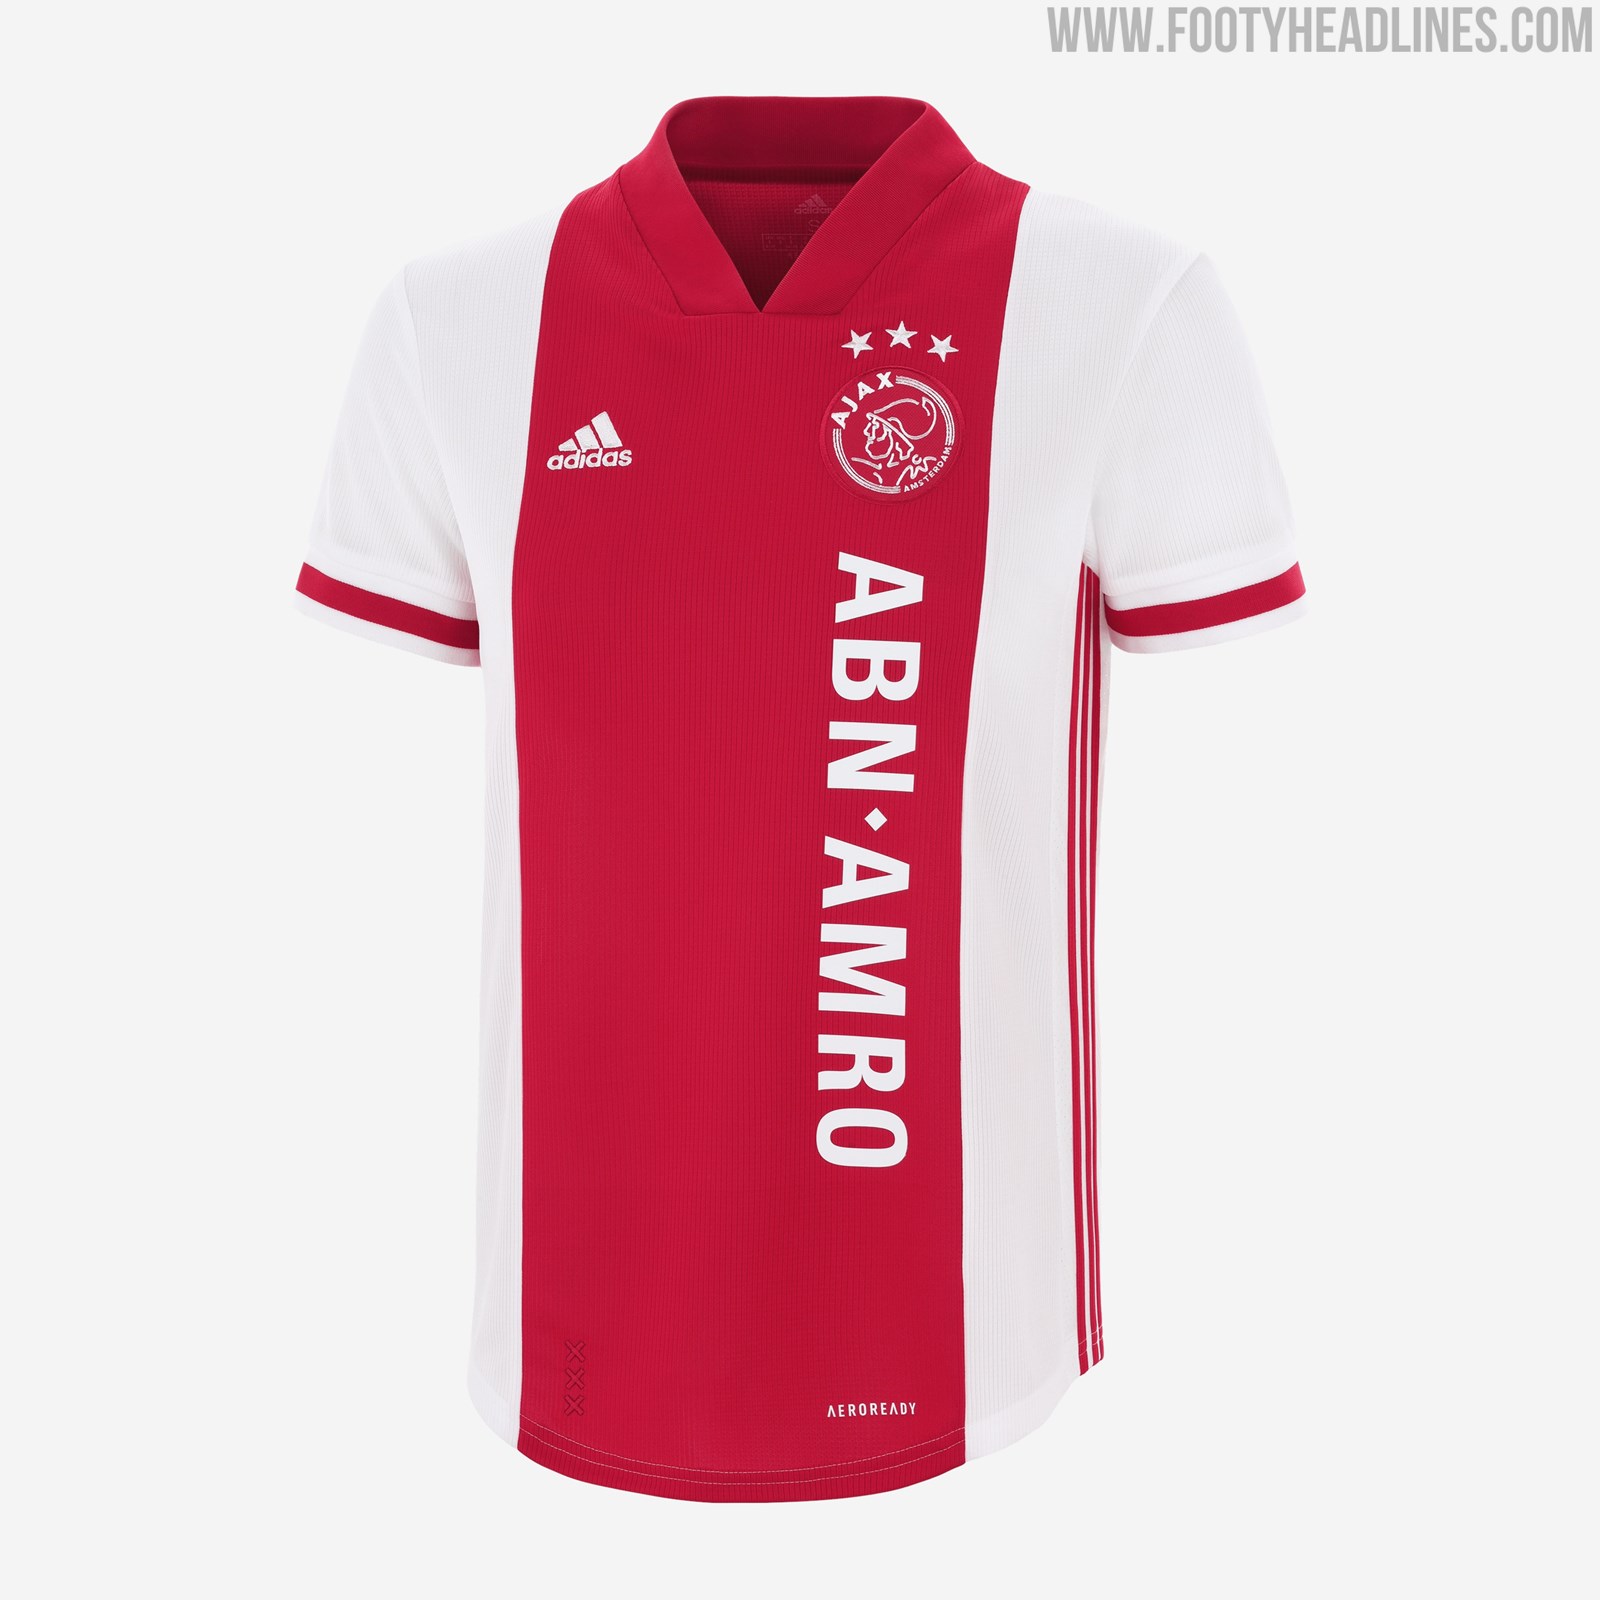 Magistraat Van storm ontwikkelen Ajax 20-21 Home Kit With Iconic ABN AMRO Sponsor Released - Women's Only -  Footy Headlines